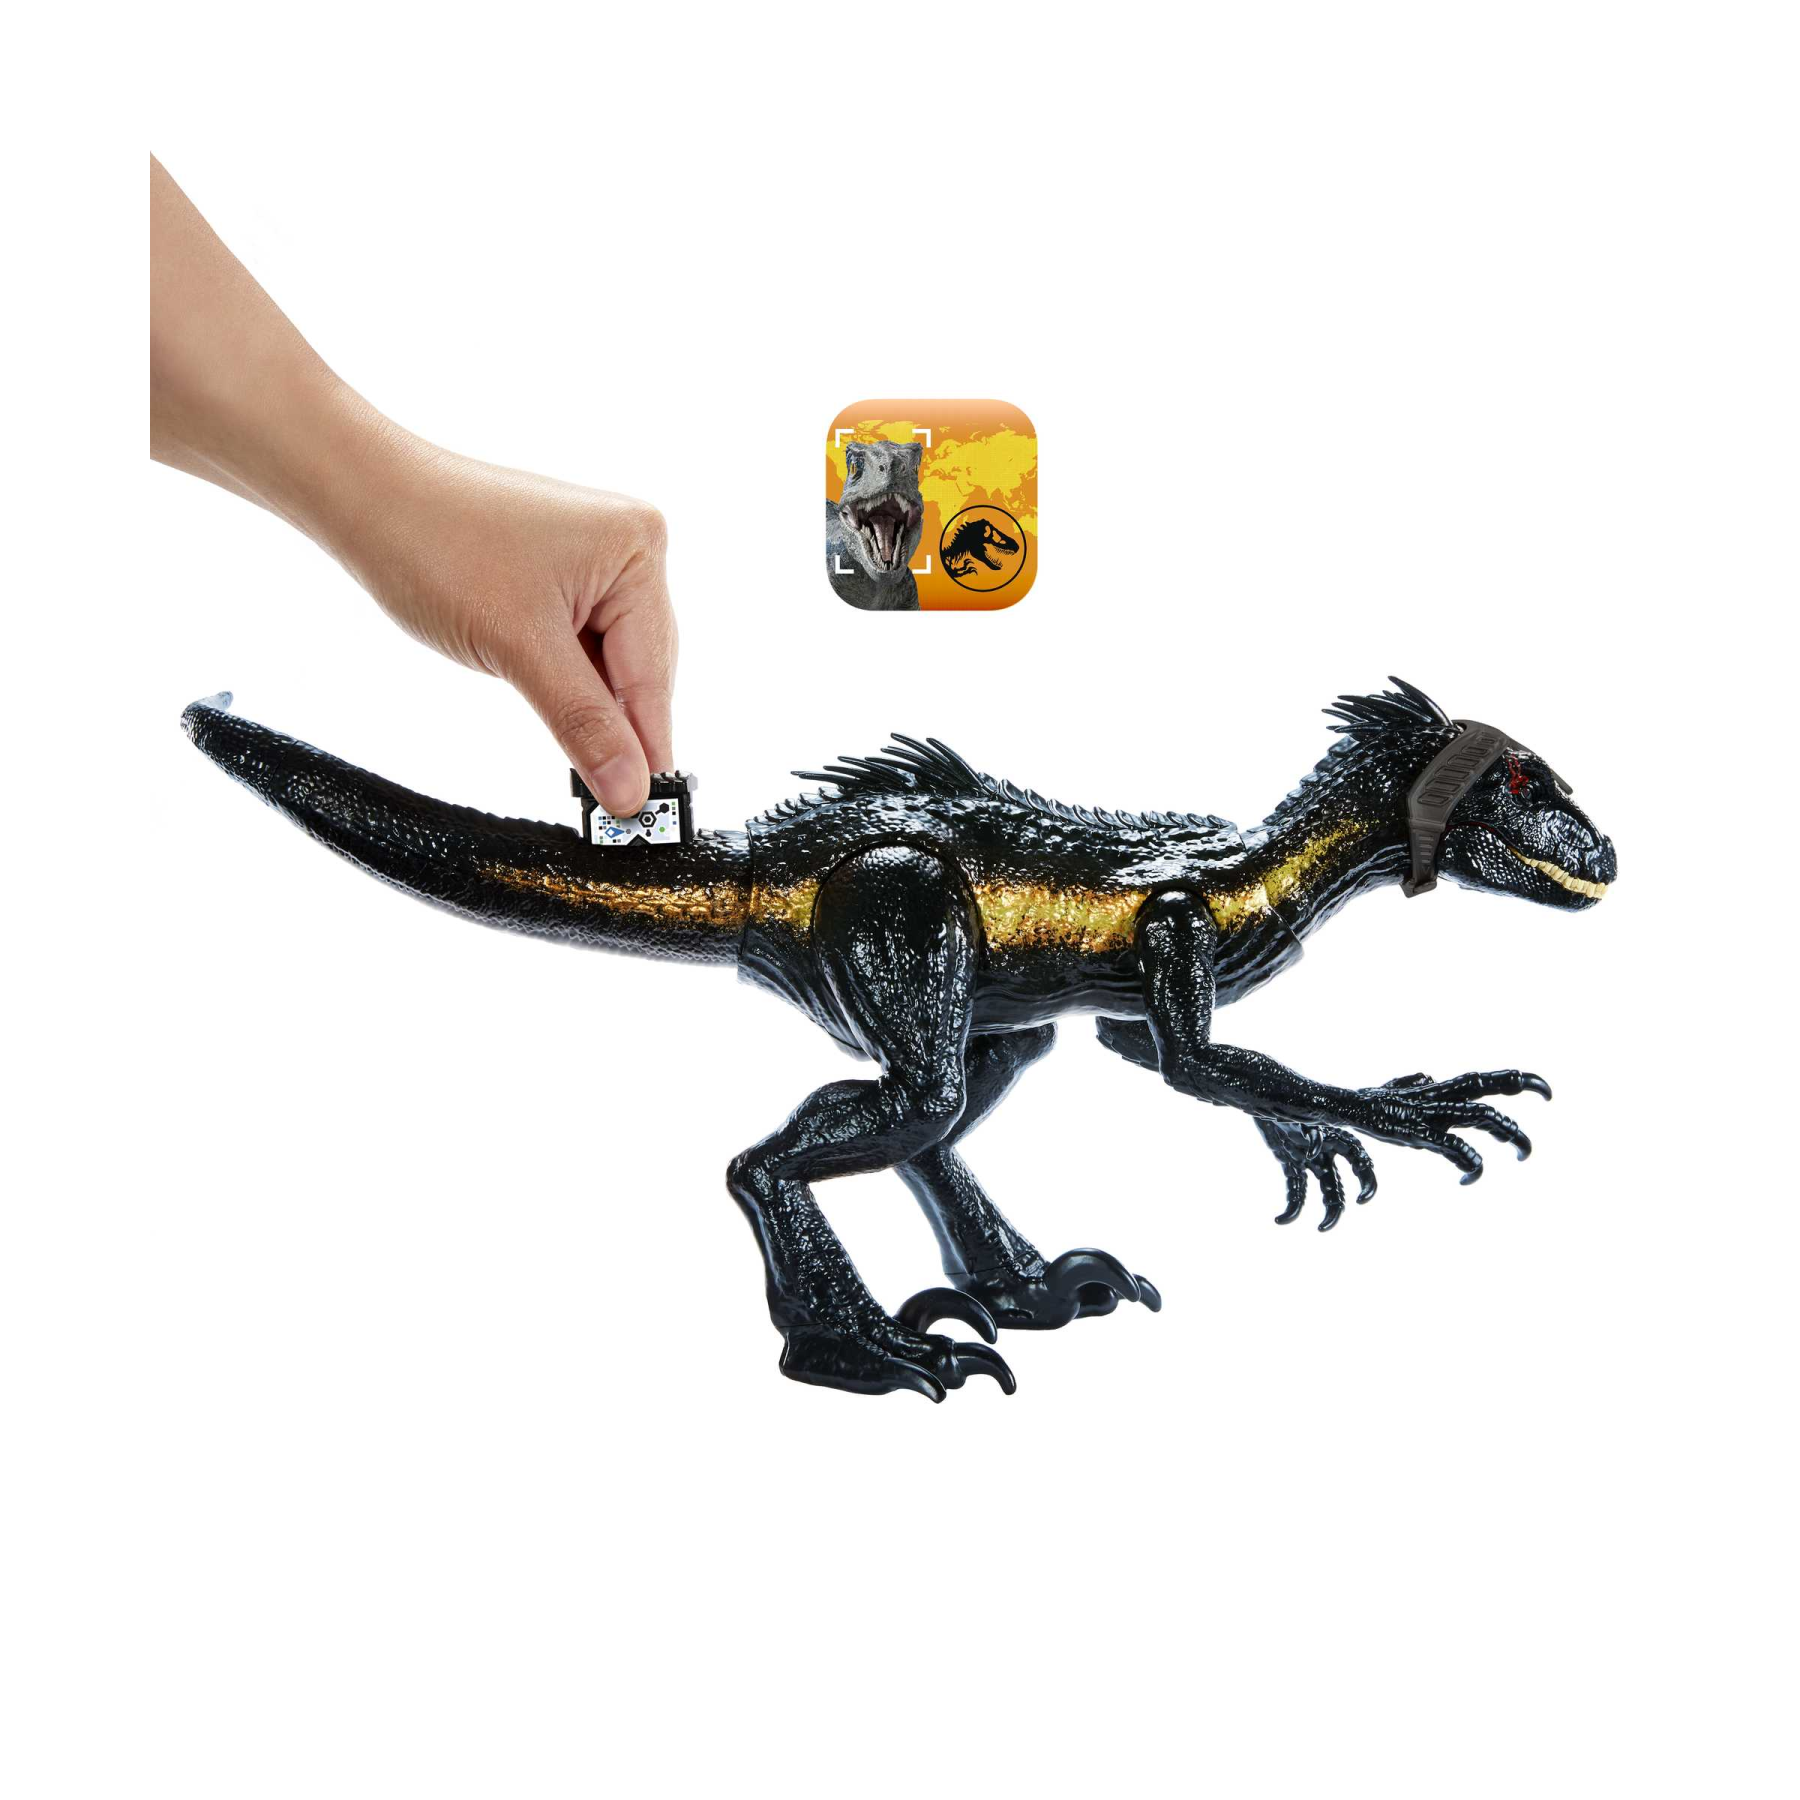 Jurassic world - indoraptor cerca e attacca, funzionalità di attacco specifiche, luci e suoni e azione graffiante, giocattolo per bambini, 4+ anni, hky11 - Jurassic World